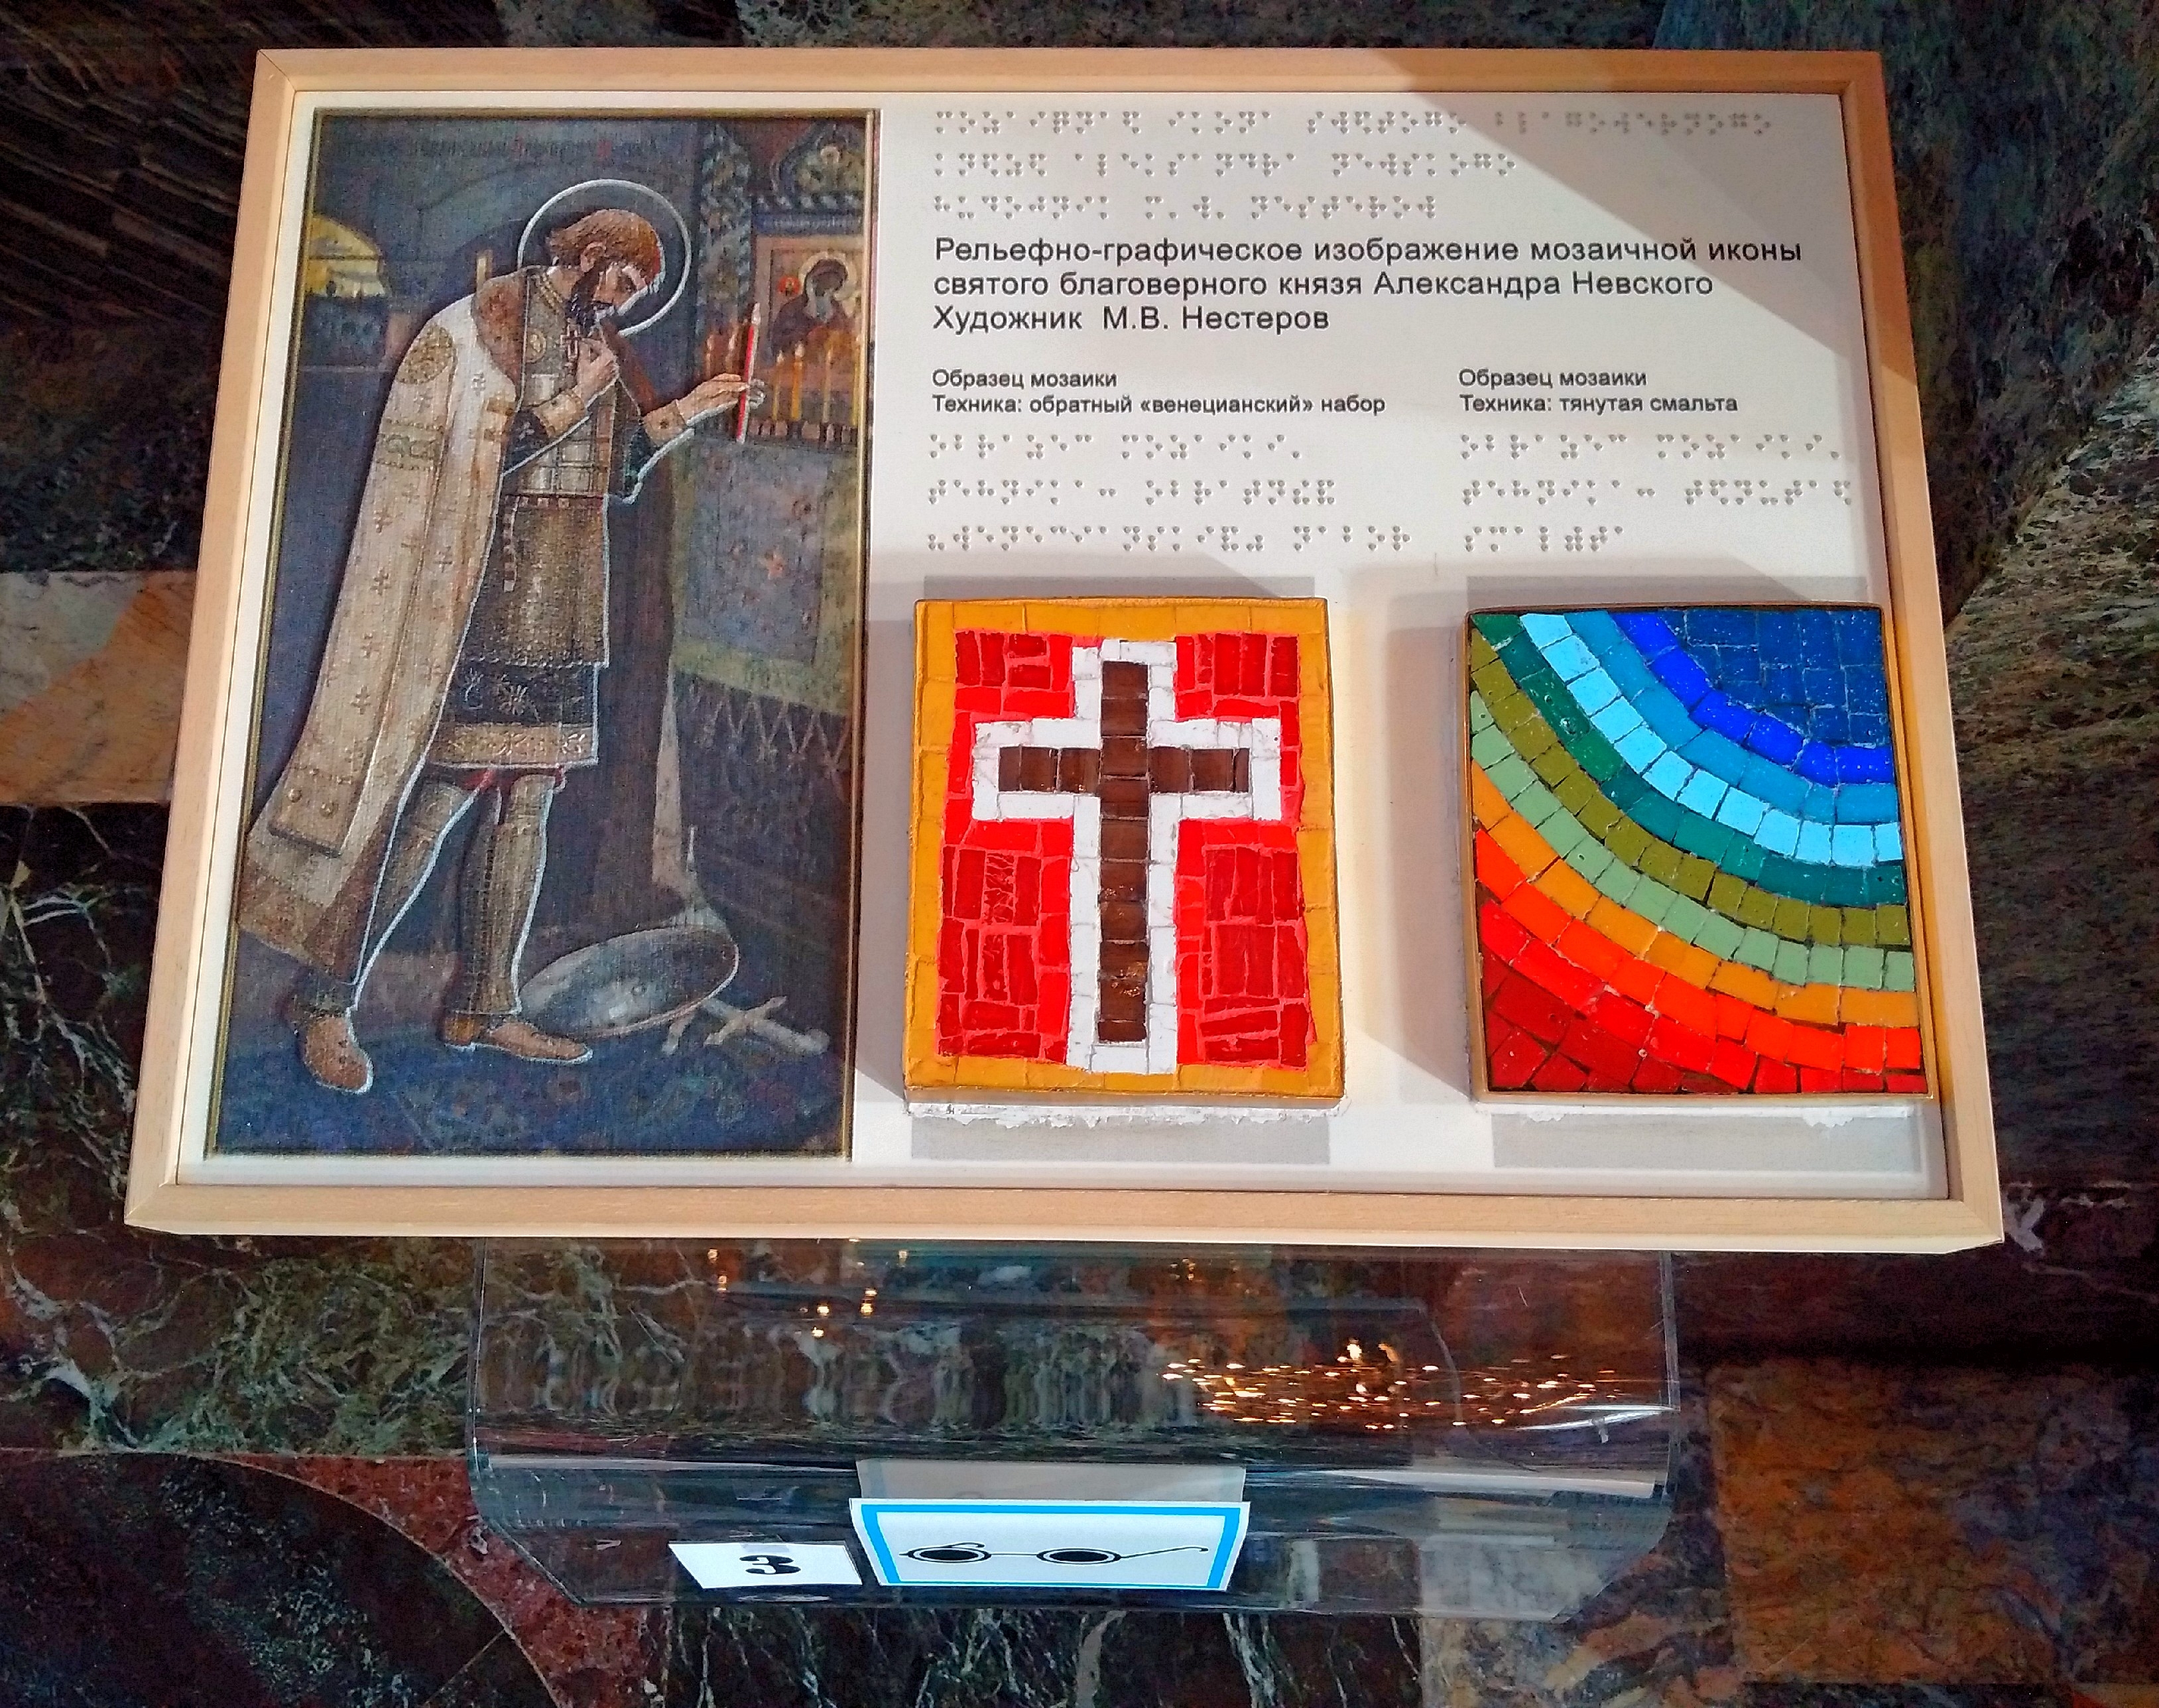 Горизонтальная фотография рельефно-графического изображения мозаичной иконы святого благоверного князя Александра Невского.